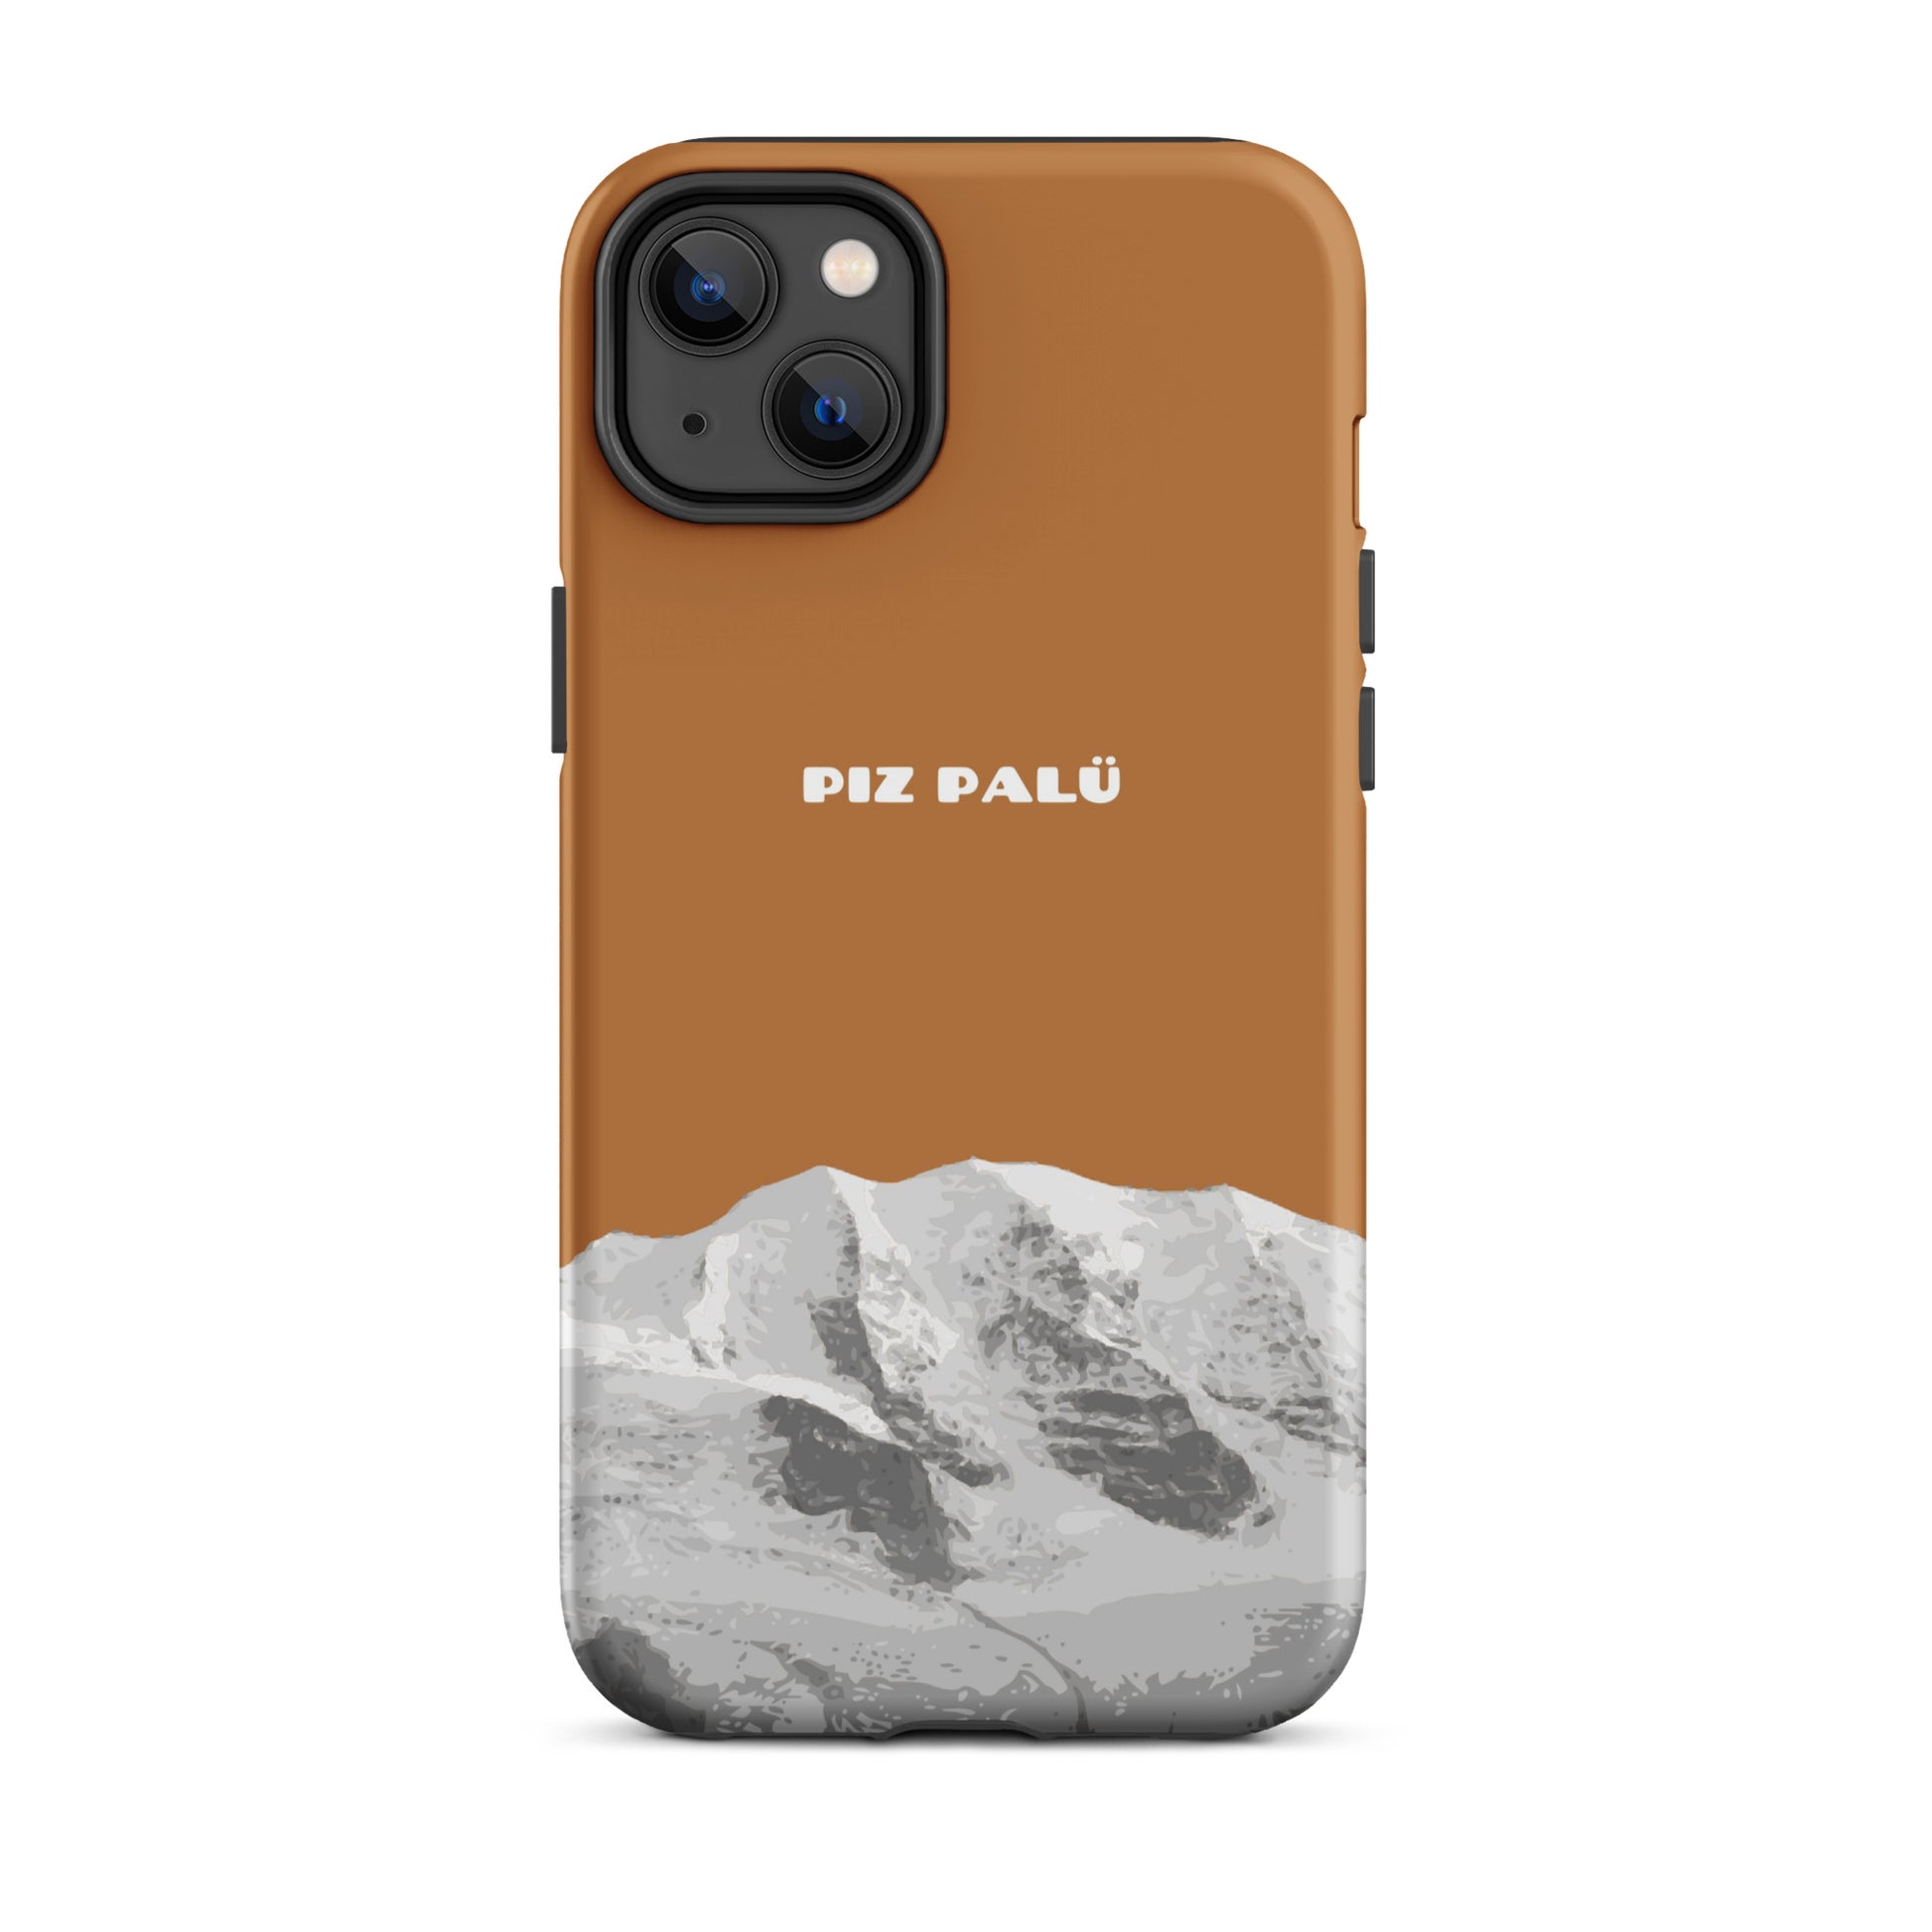 Hülle für das iPhone 14 Plus von Apple in der Farbe Kupfer, dass den Piz Palü in Graubünden zeigt.